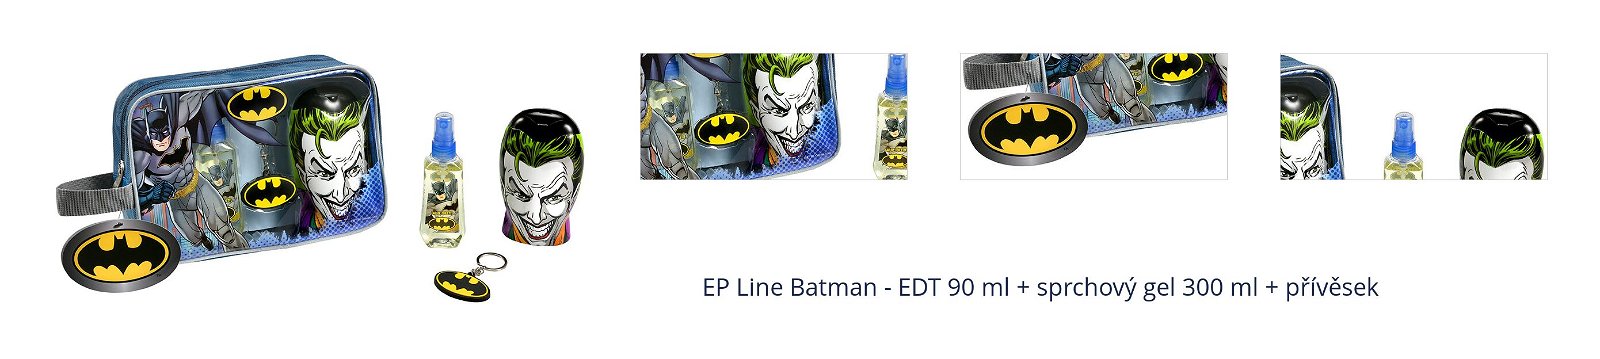 EP Line Batman - EDT 90 ml + sprchový gel 300 ml + přívěsek 1